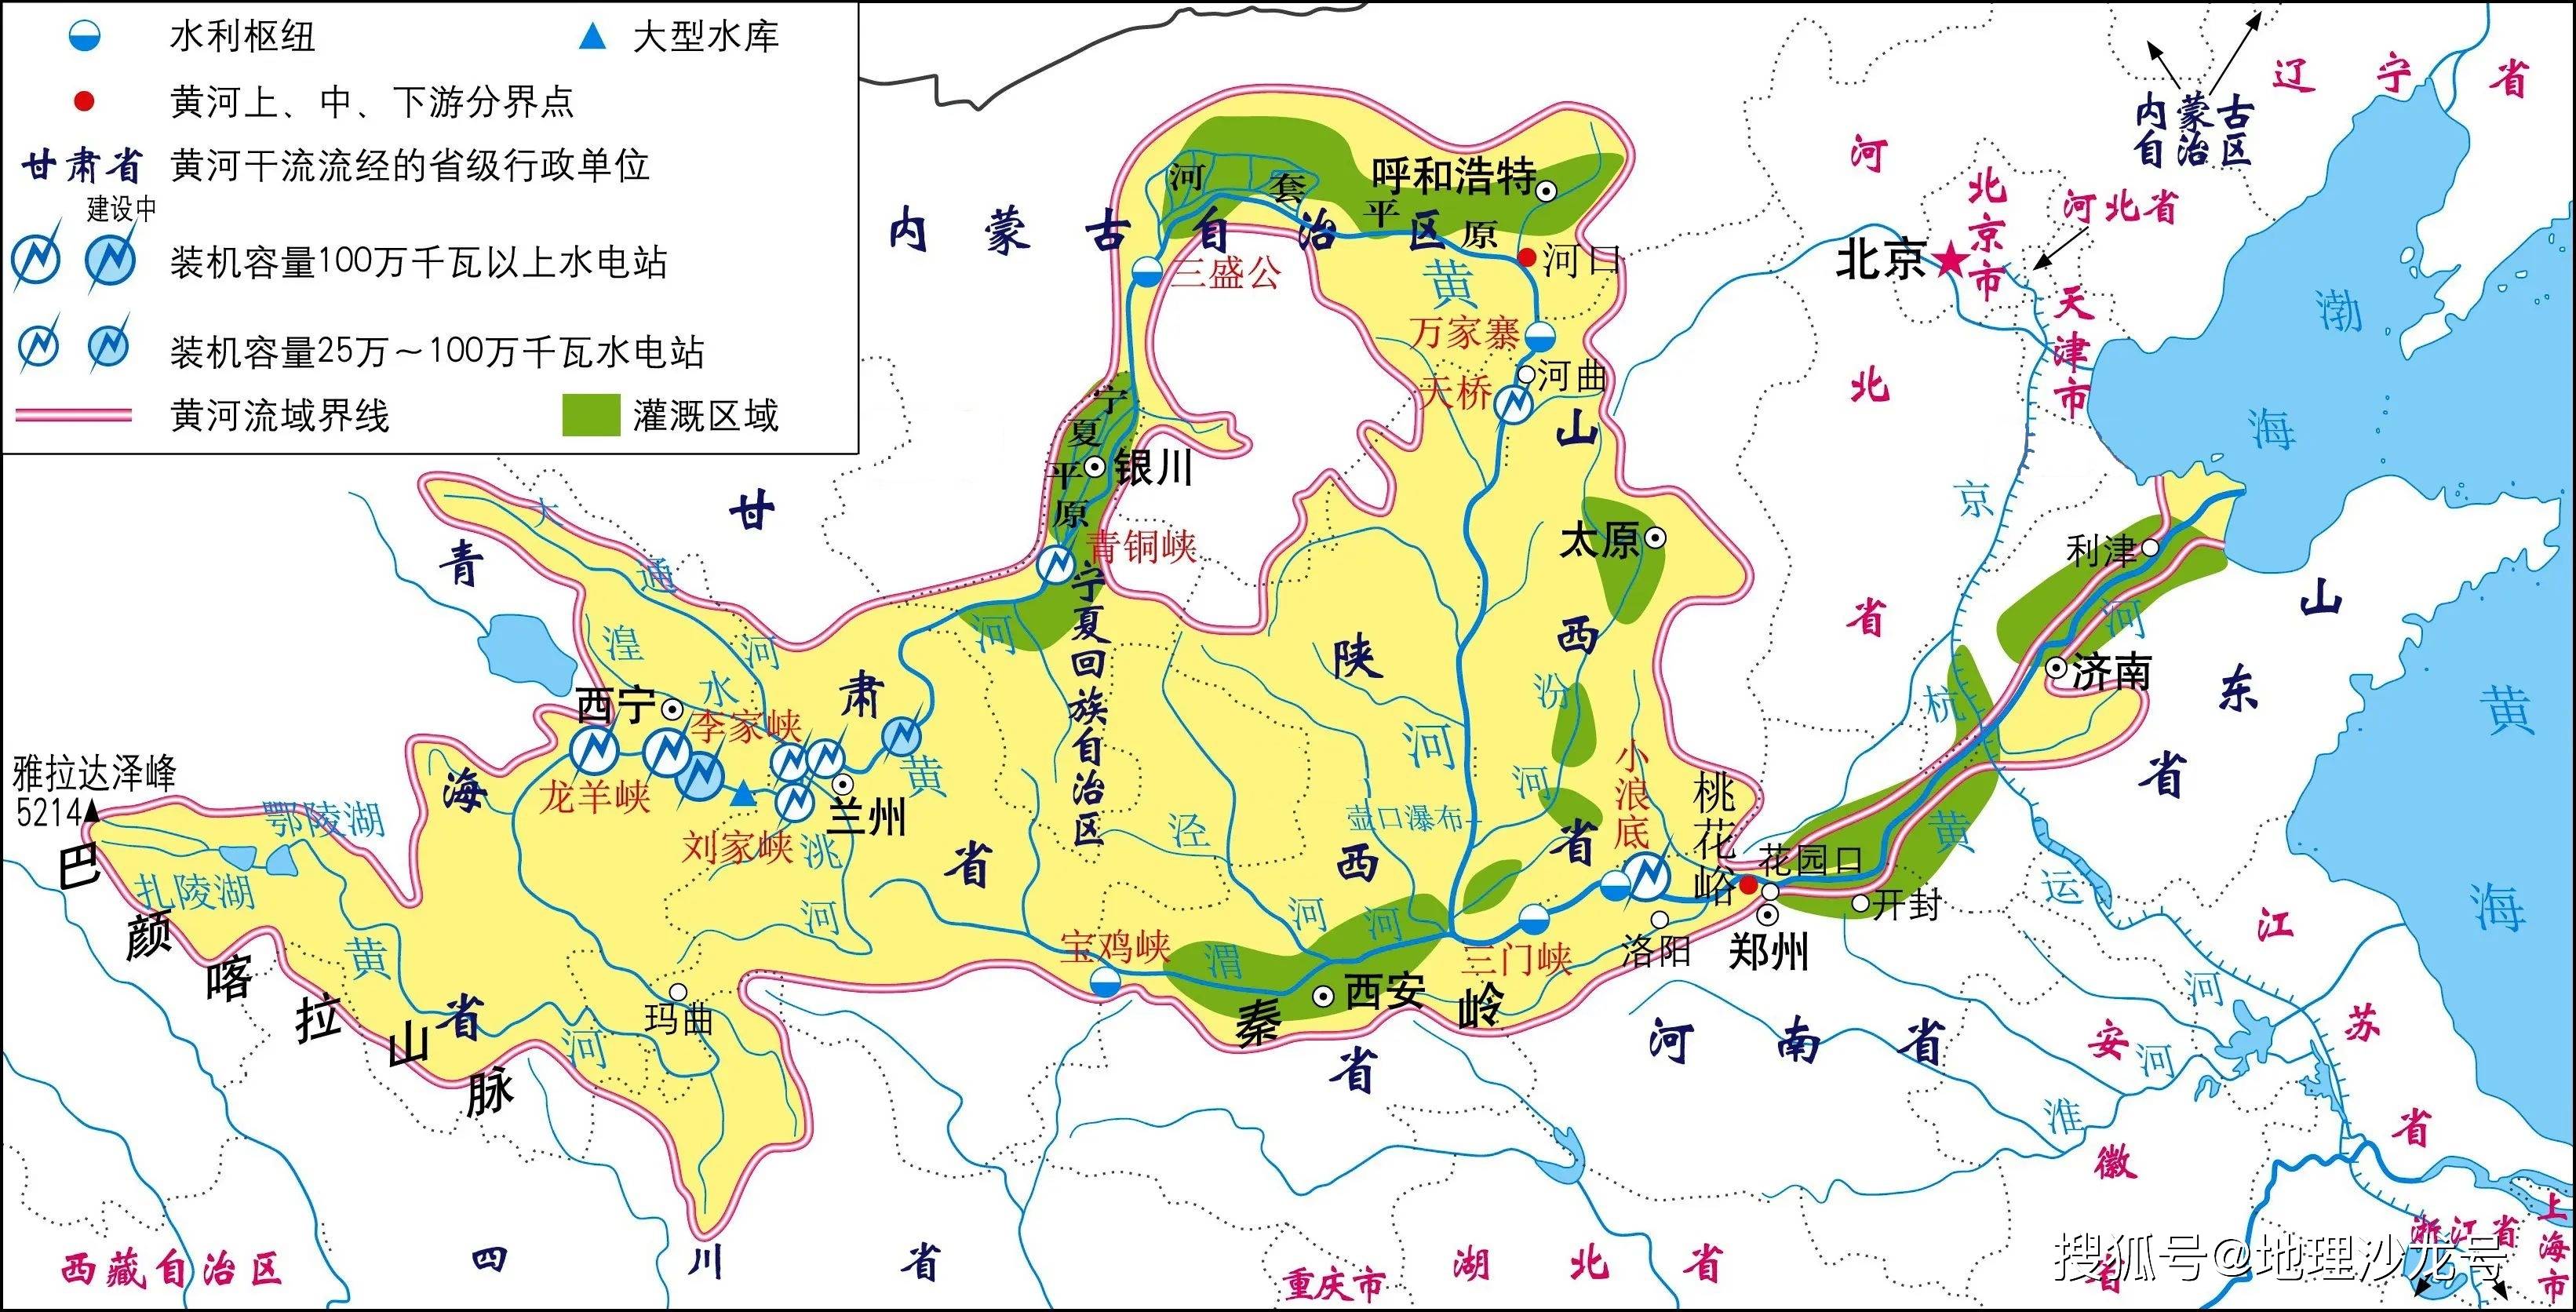 长江和黄河两条母亲河的干流都流经的省区只有青海省和四川省